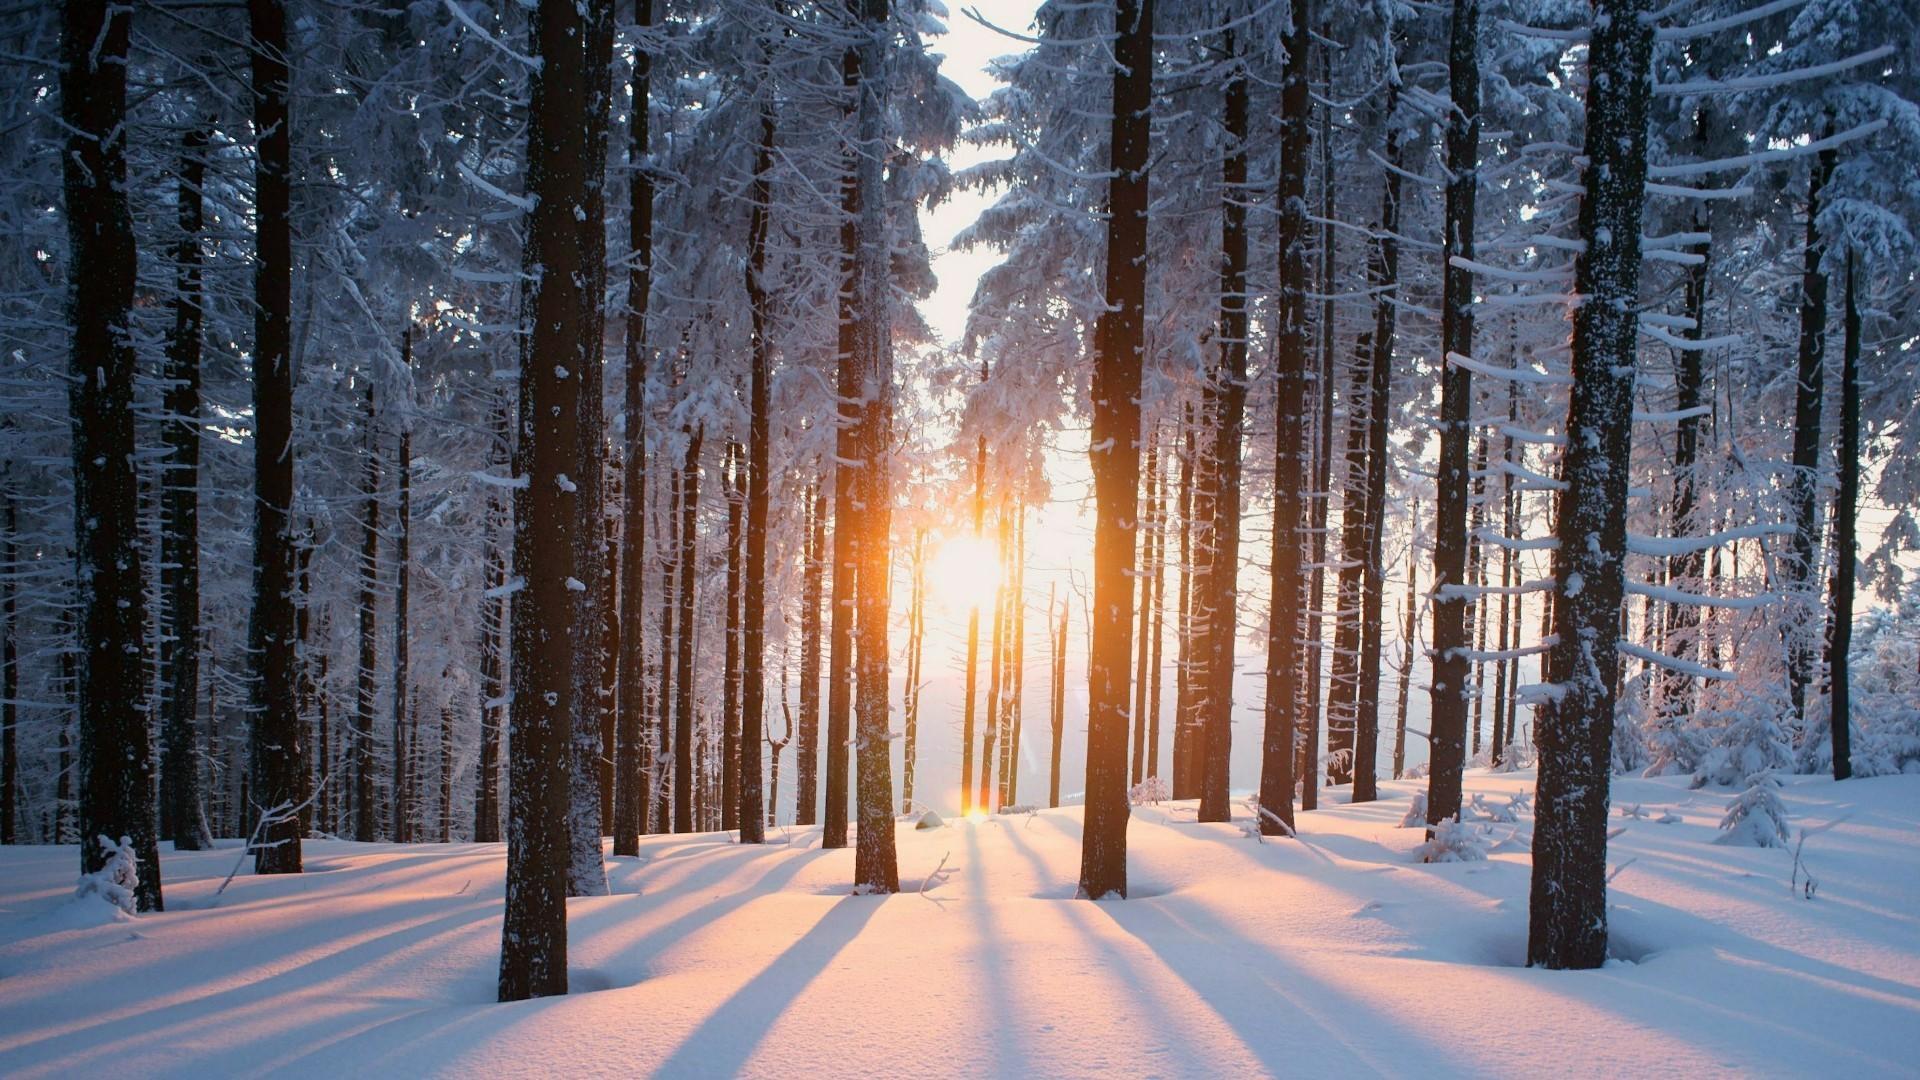 Hình nền rừng mùa đông HD 1920x1080: Hãy thưởng thức hình nền rừng mùa đông HD 1920x1080, ngắm nhìn những cây rừng đầy tuyết trắng tinh khiết và đẹp mê hồn. Bức hình này sẽ cho bạn cảm giác thư giãn và bình yên.